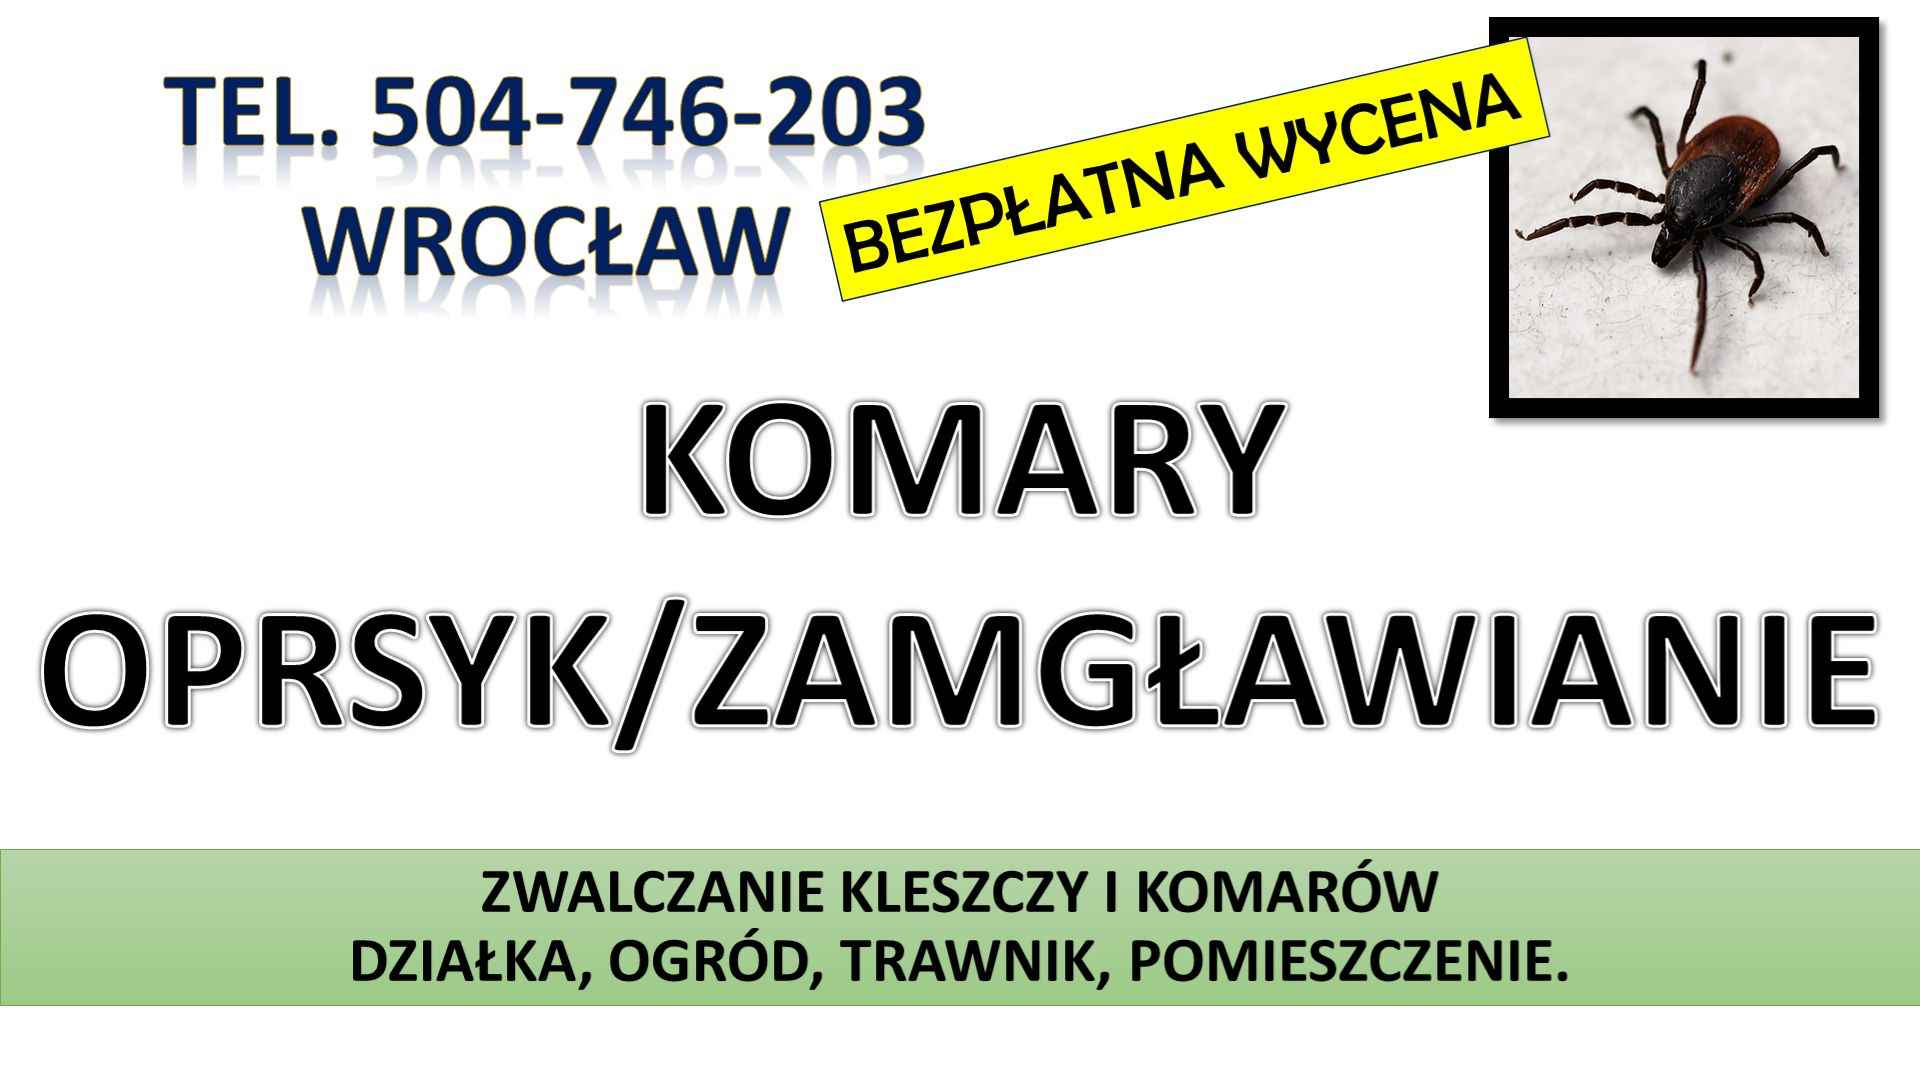 Zwalczanie kleszczy, cena, Wrocław, t504-746-203, Opryski, likwidacja. Psie Pole - zdjęcie 5